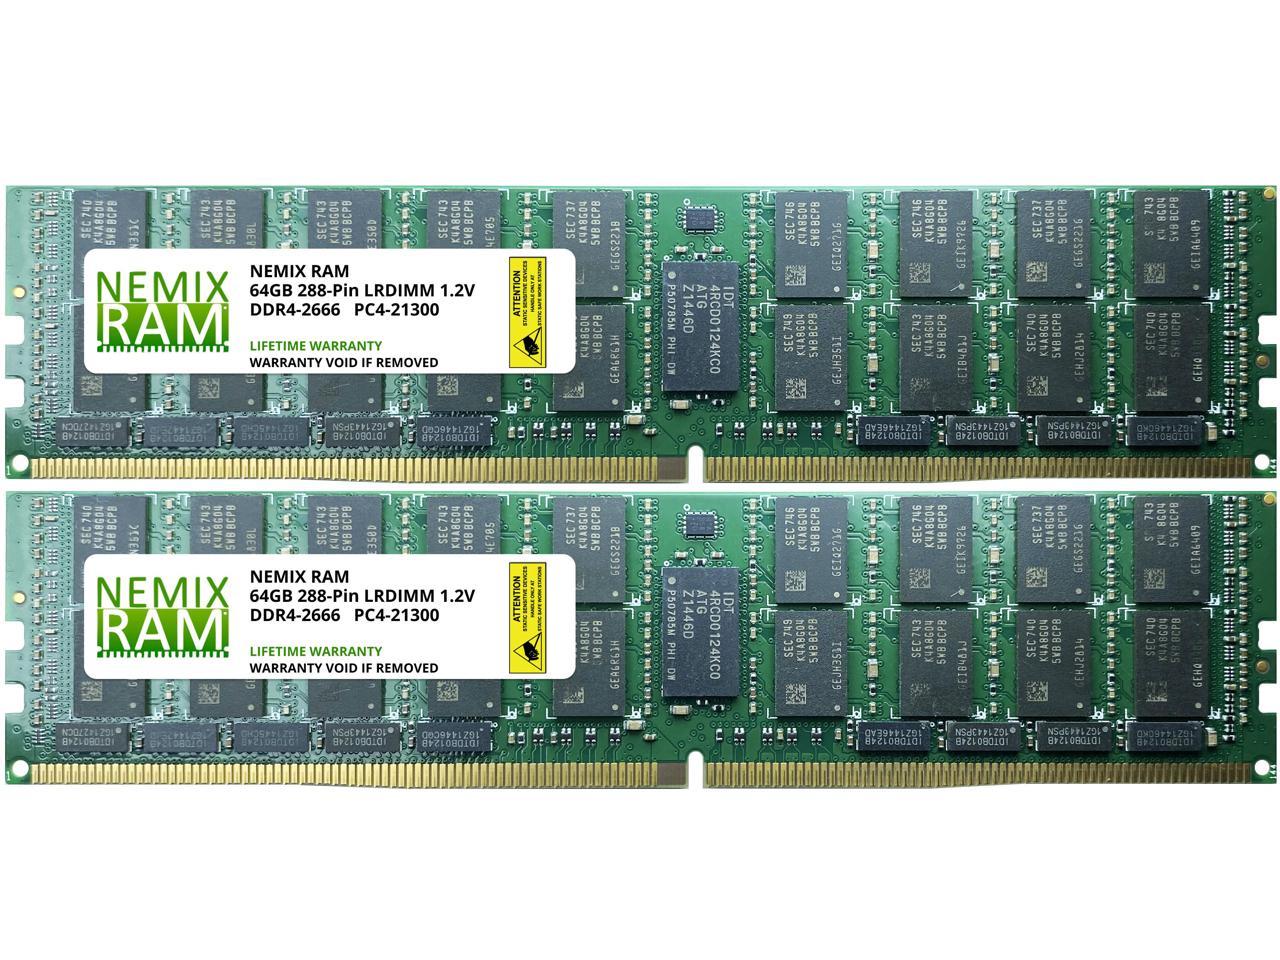 NEMIX RAM 128GB 2x64GB DDR4-2666 PC4-21300 4Rx4 ECC Load Reduced 